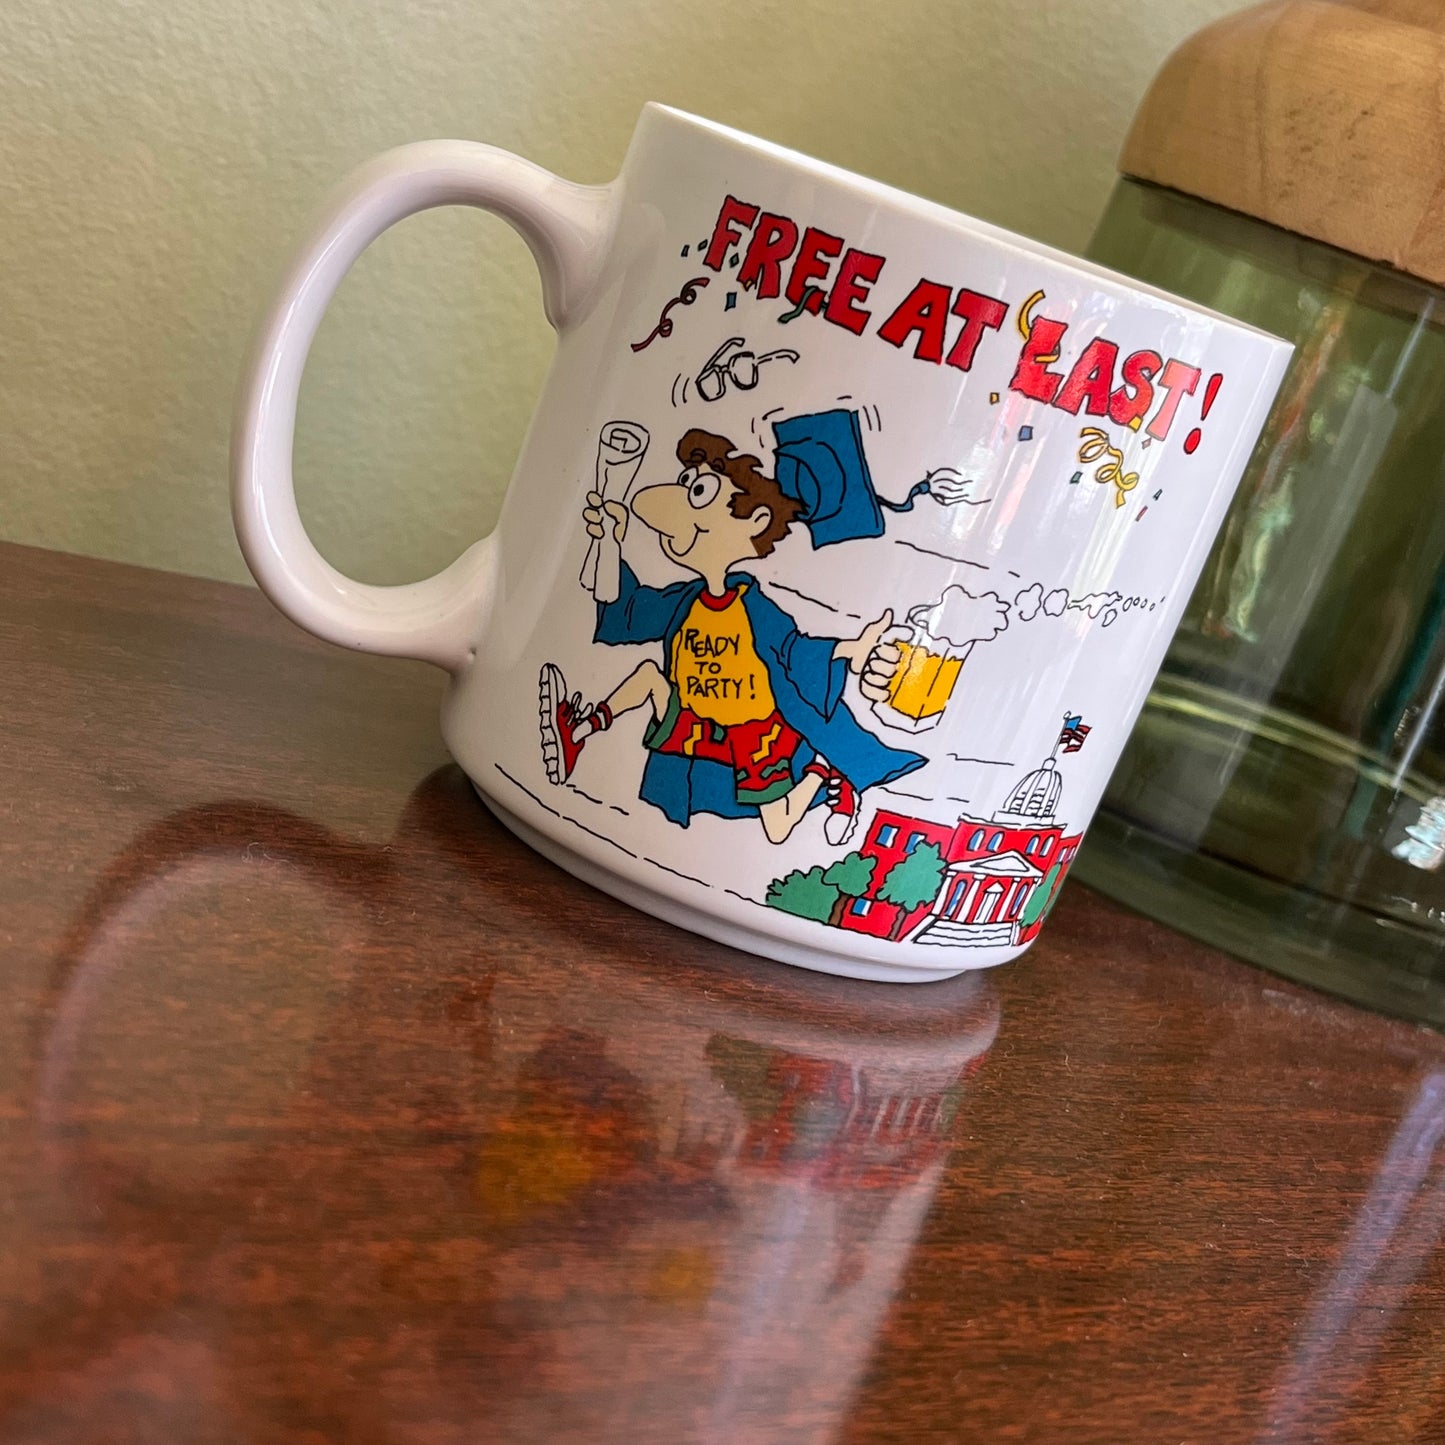 Vintage Free At Last Cartoon Graduation Mug